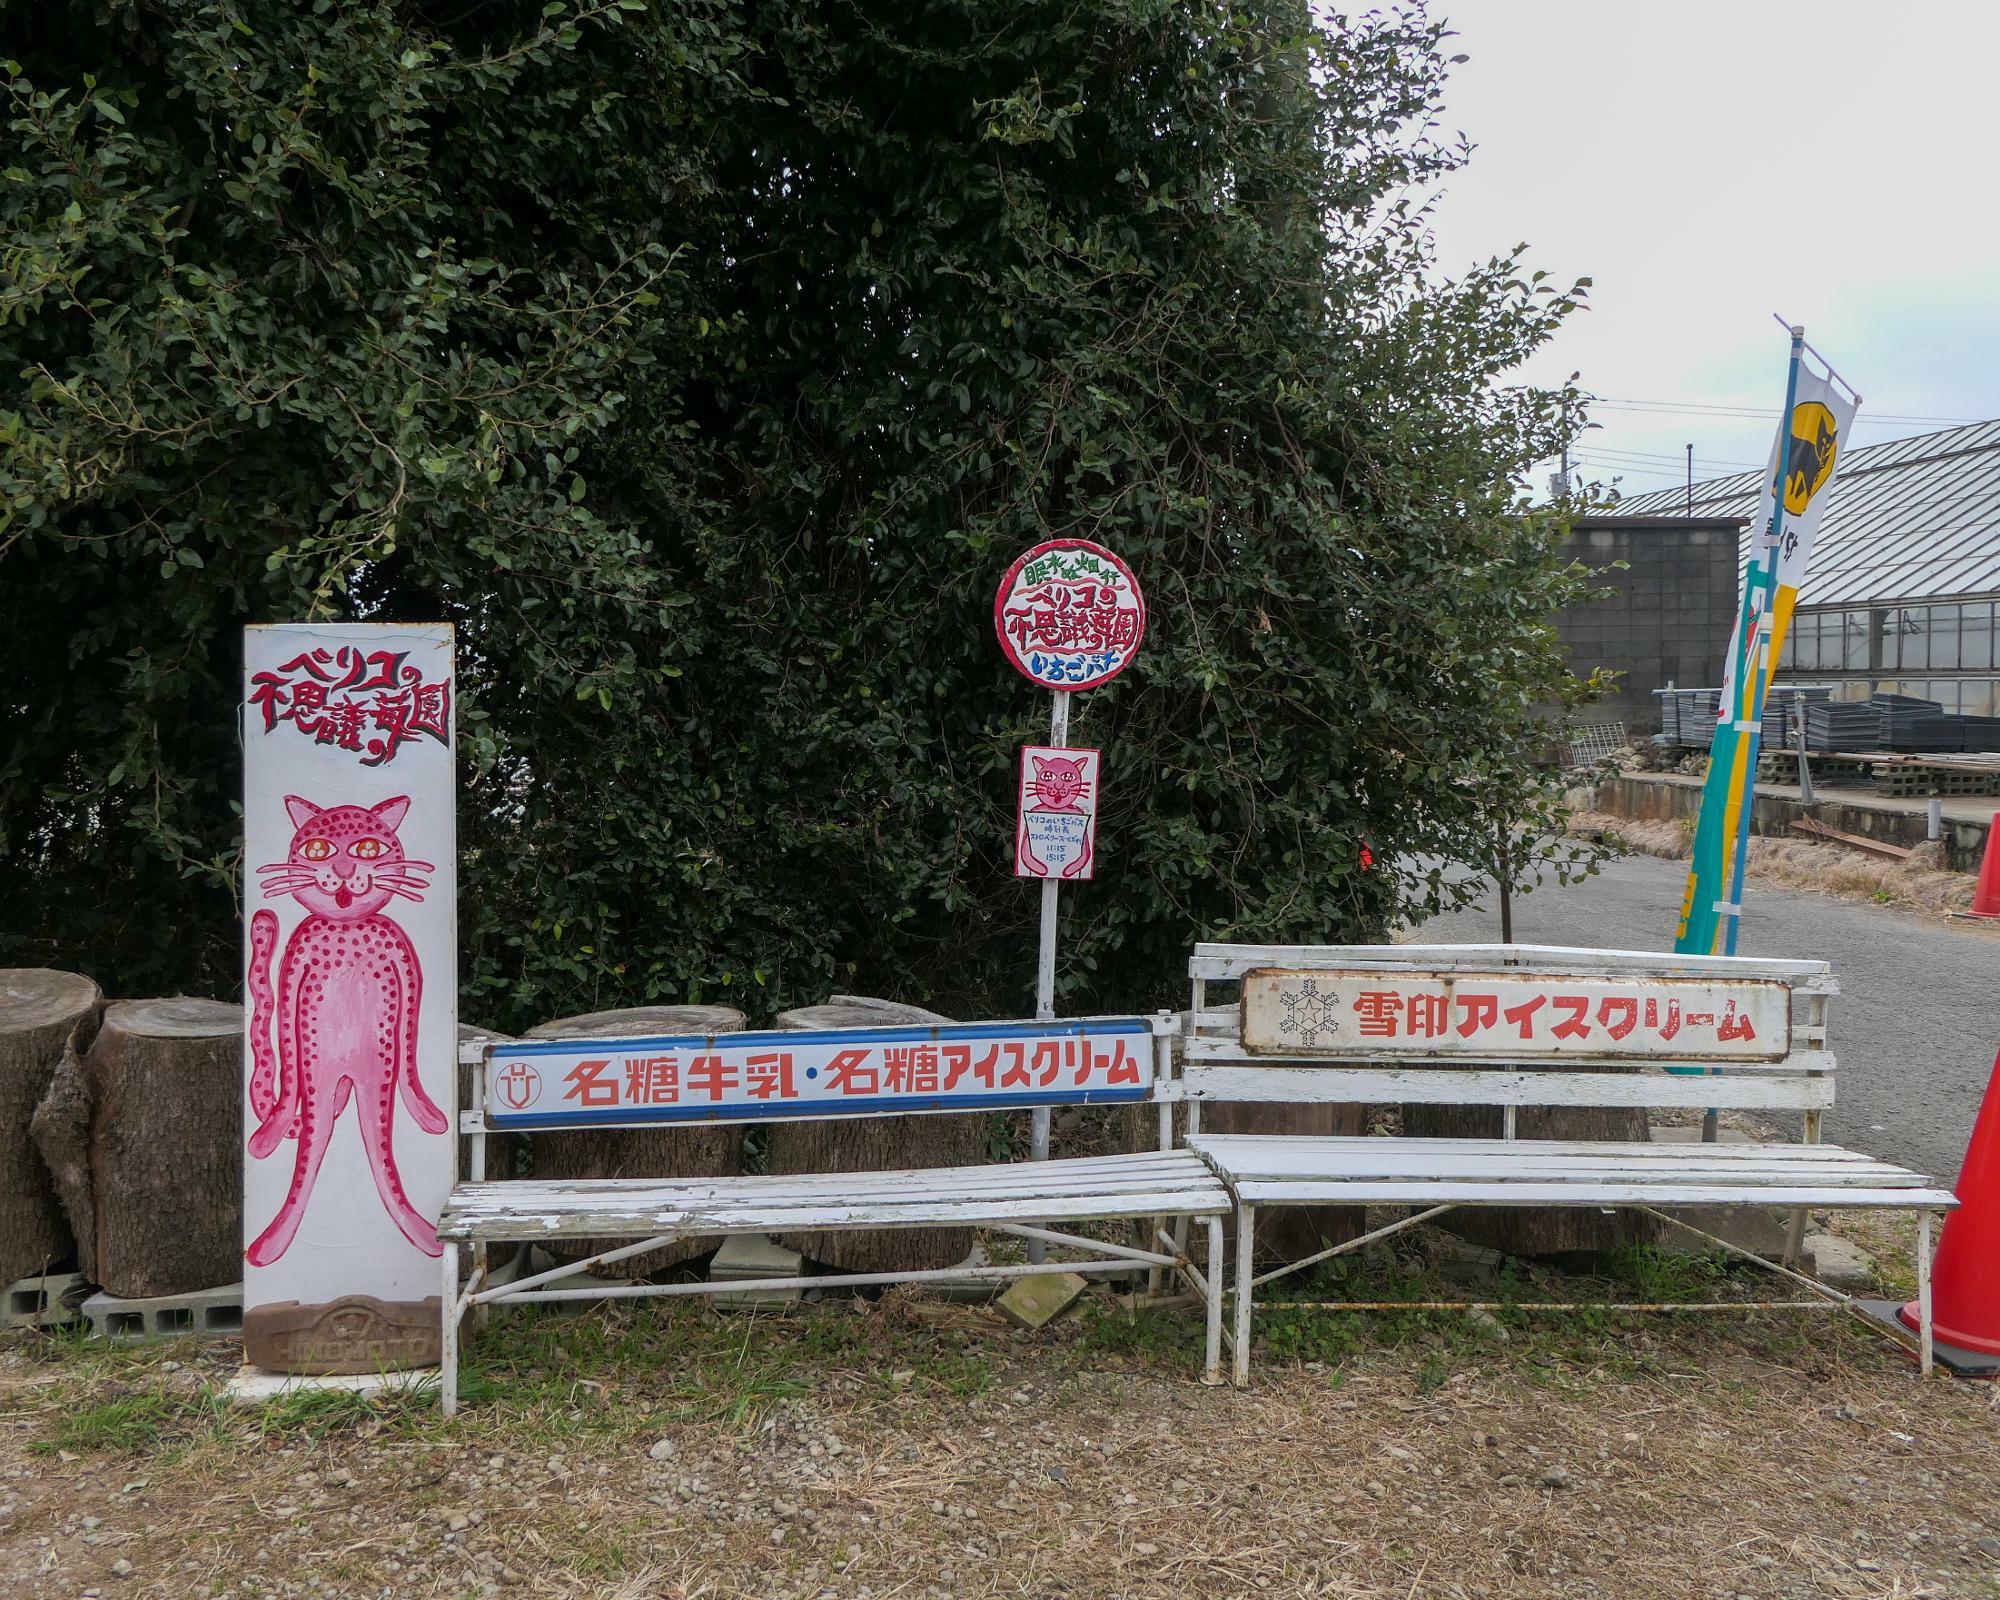 ＊ピンク色の猫が描かれたバス停